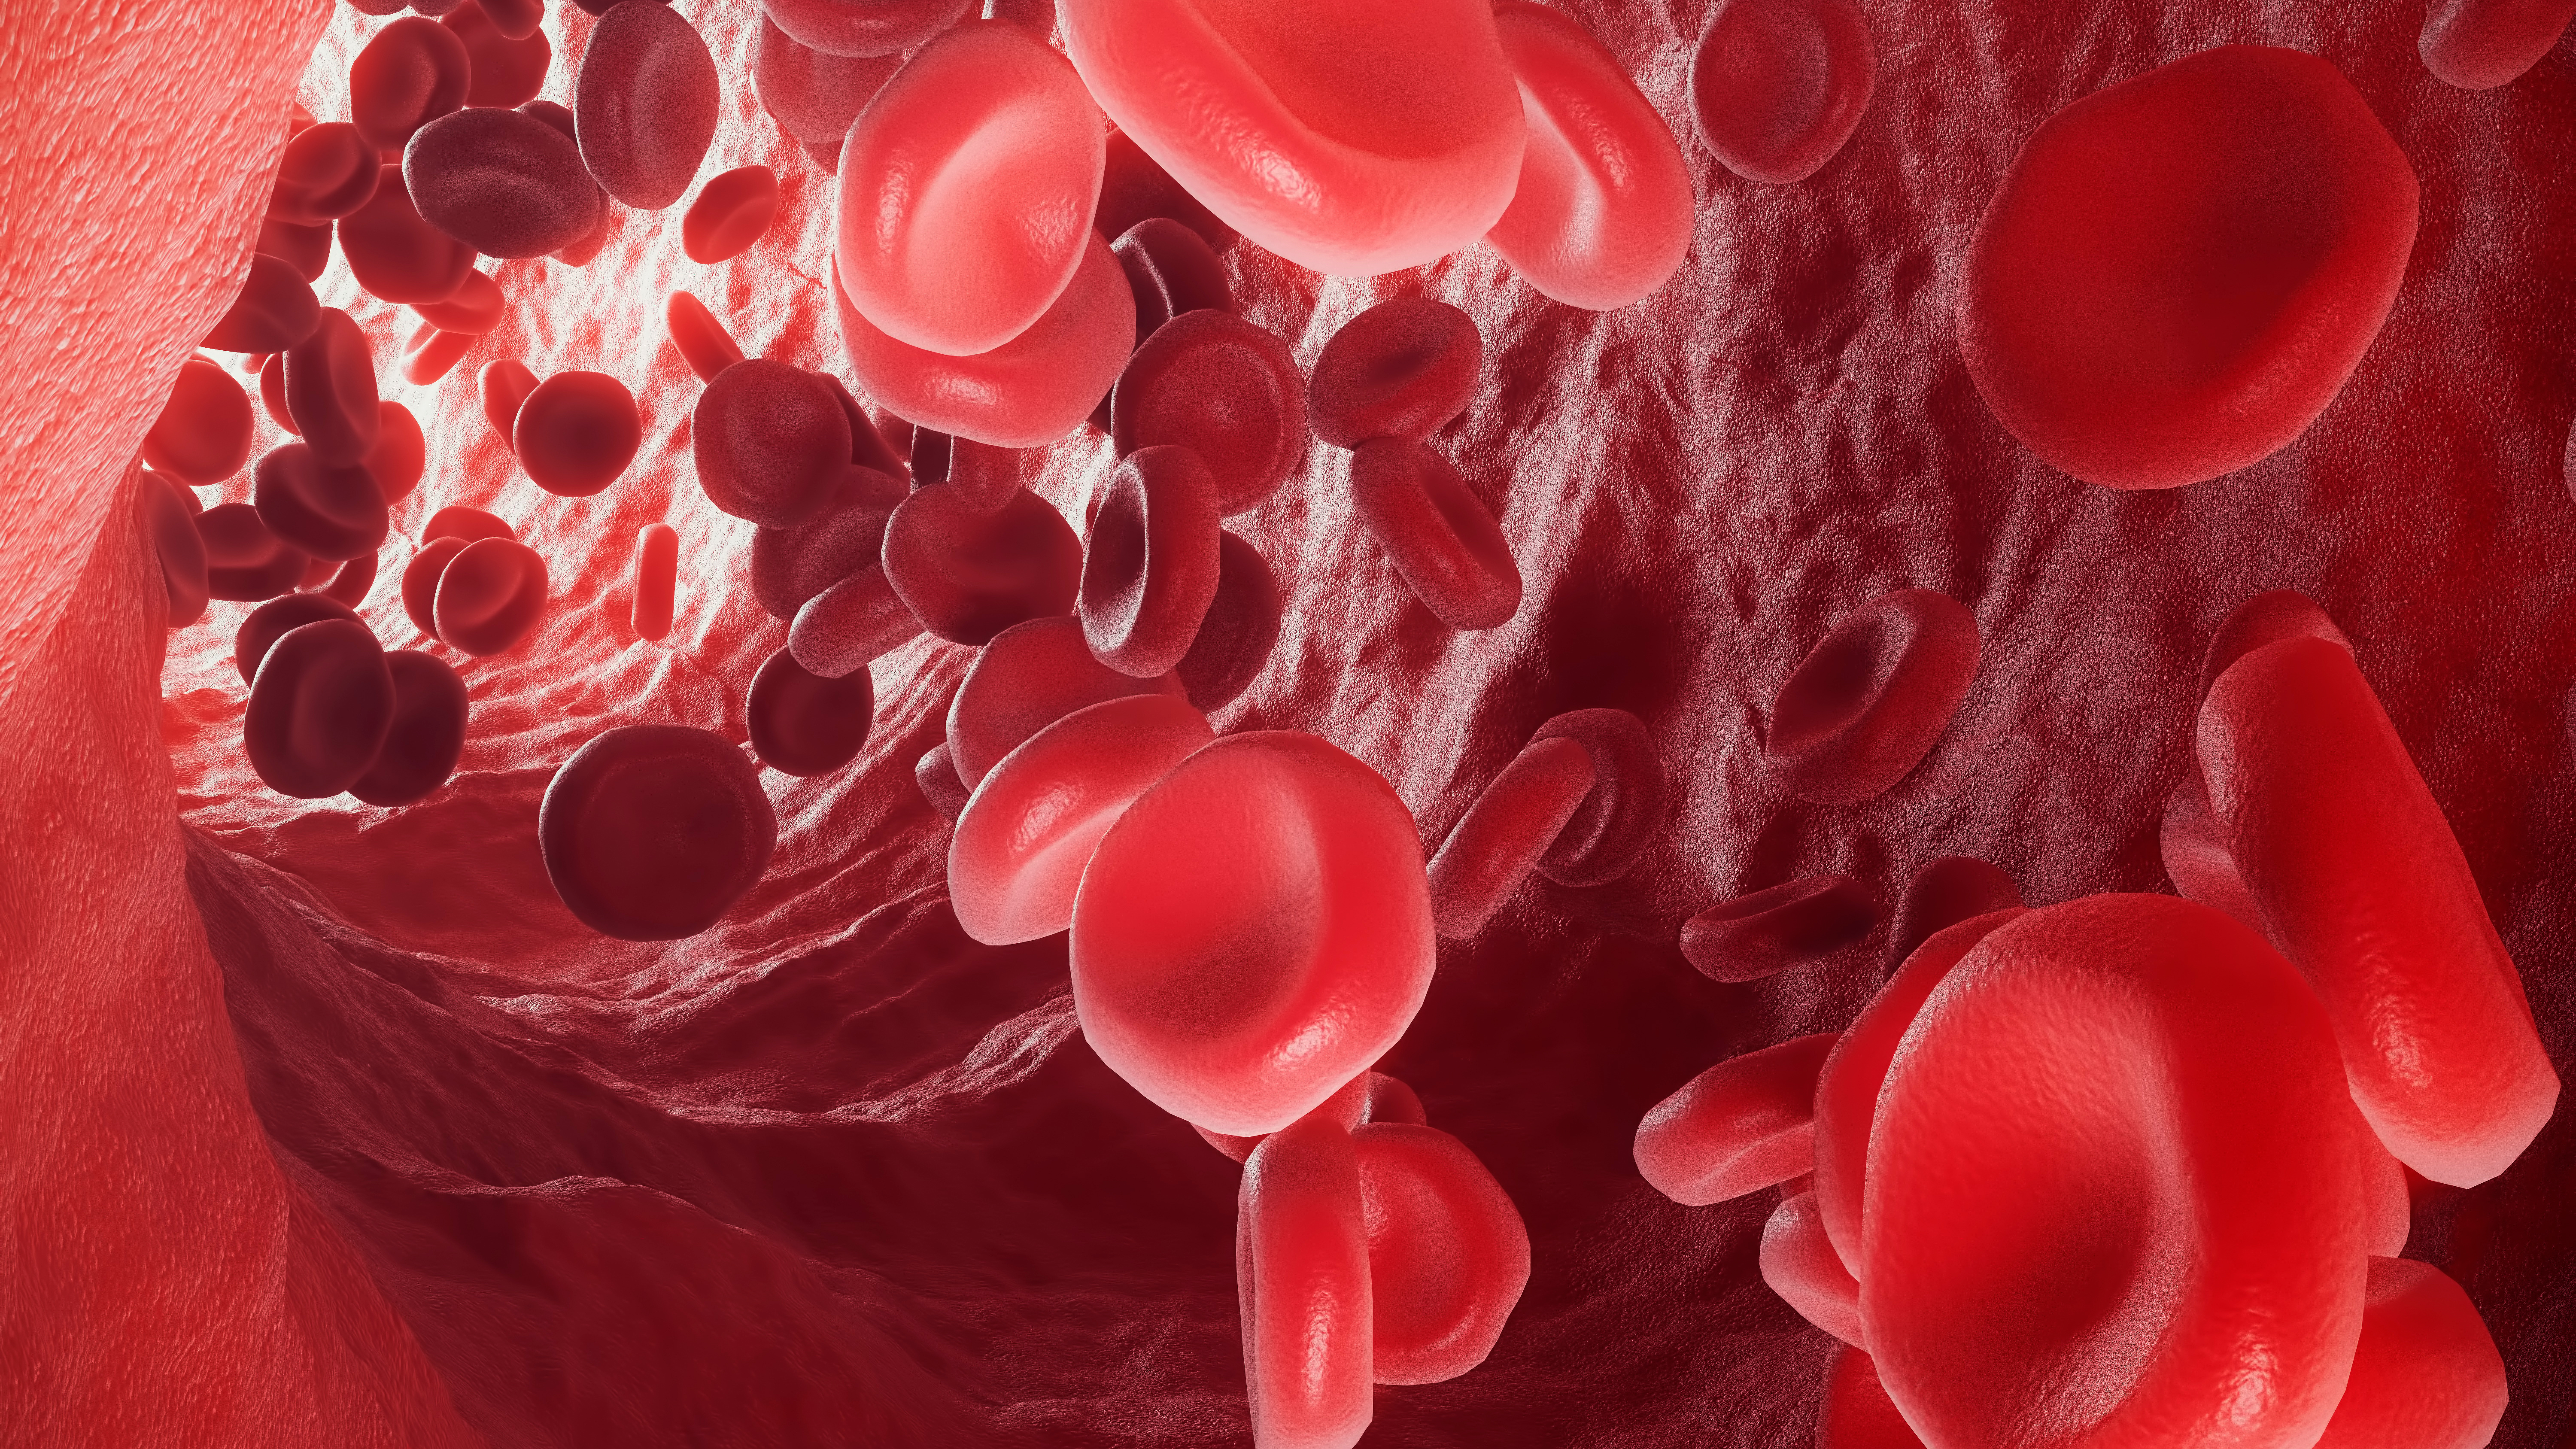 En pacientes con COVID-19 la hemoglobina se altera, no puede transportar oxígeno (Shutterstock)